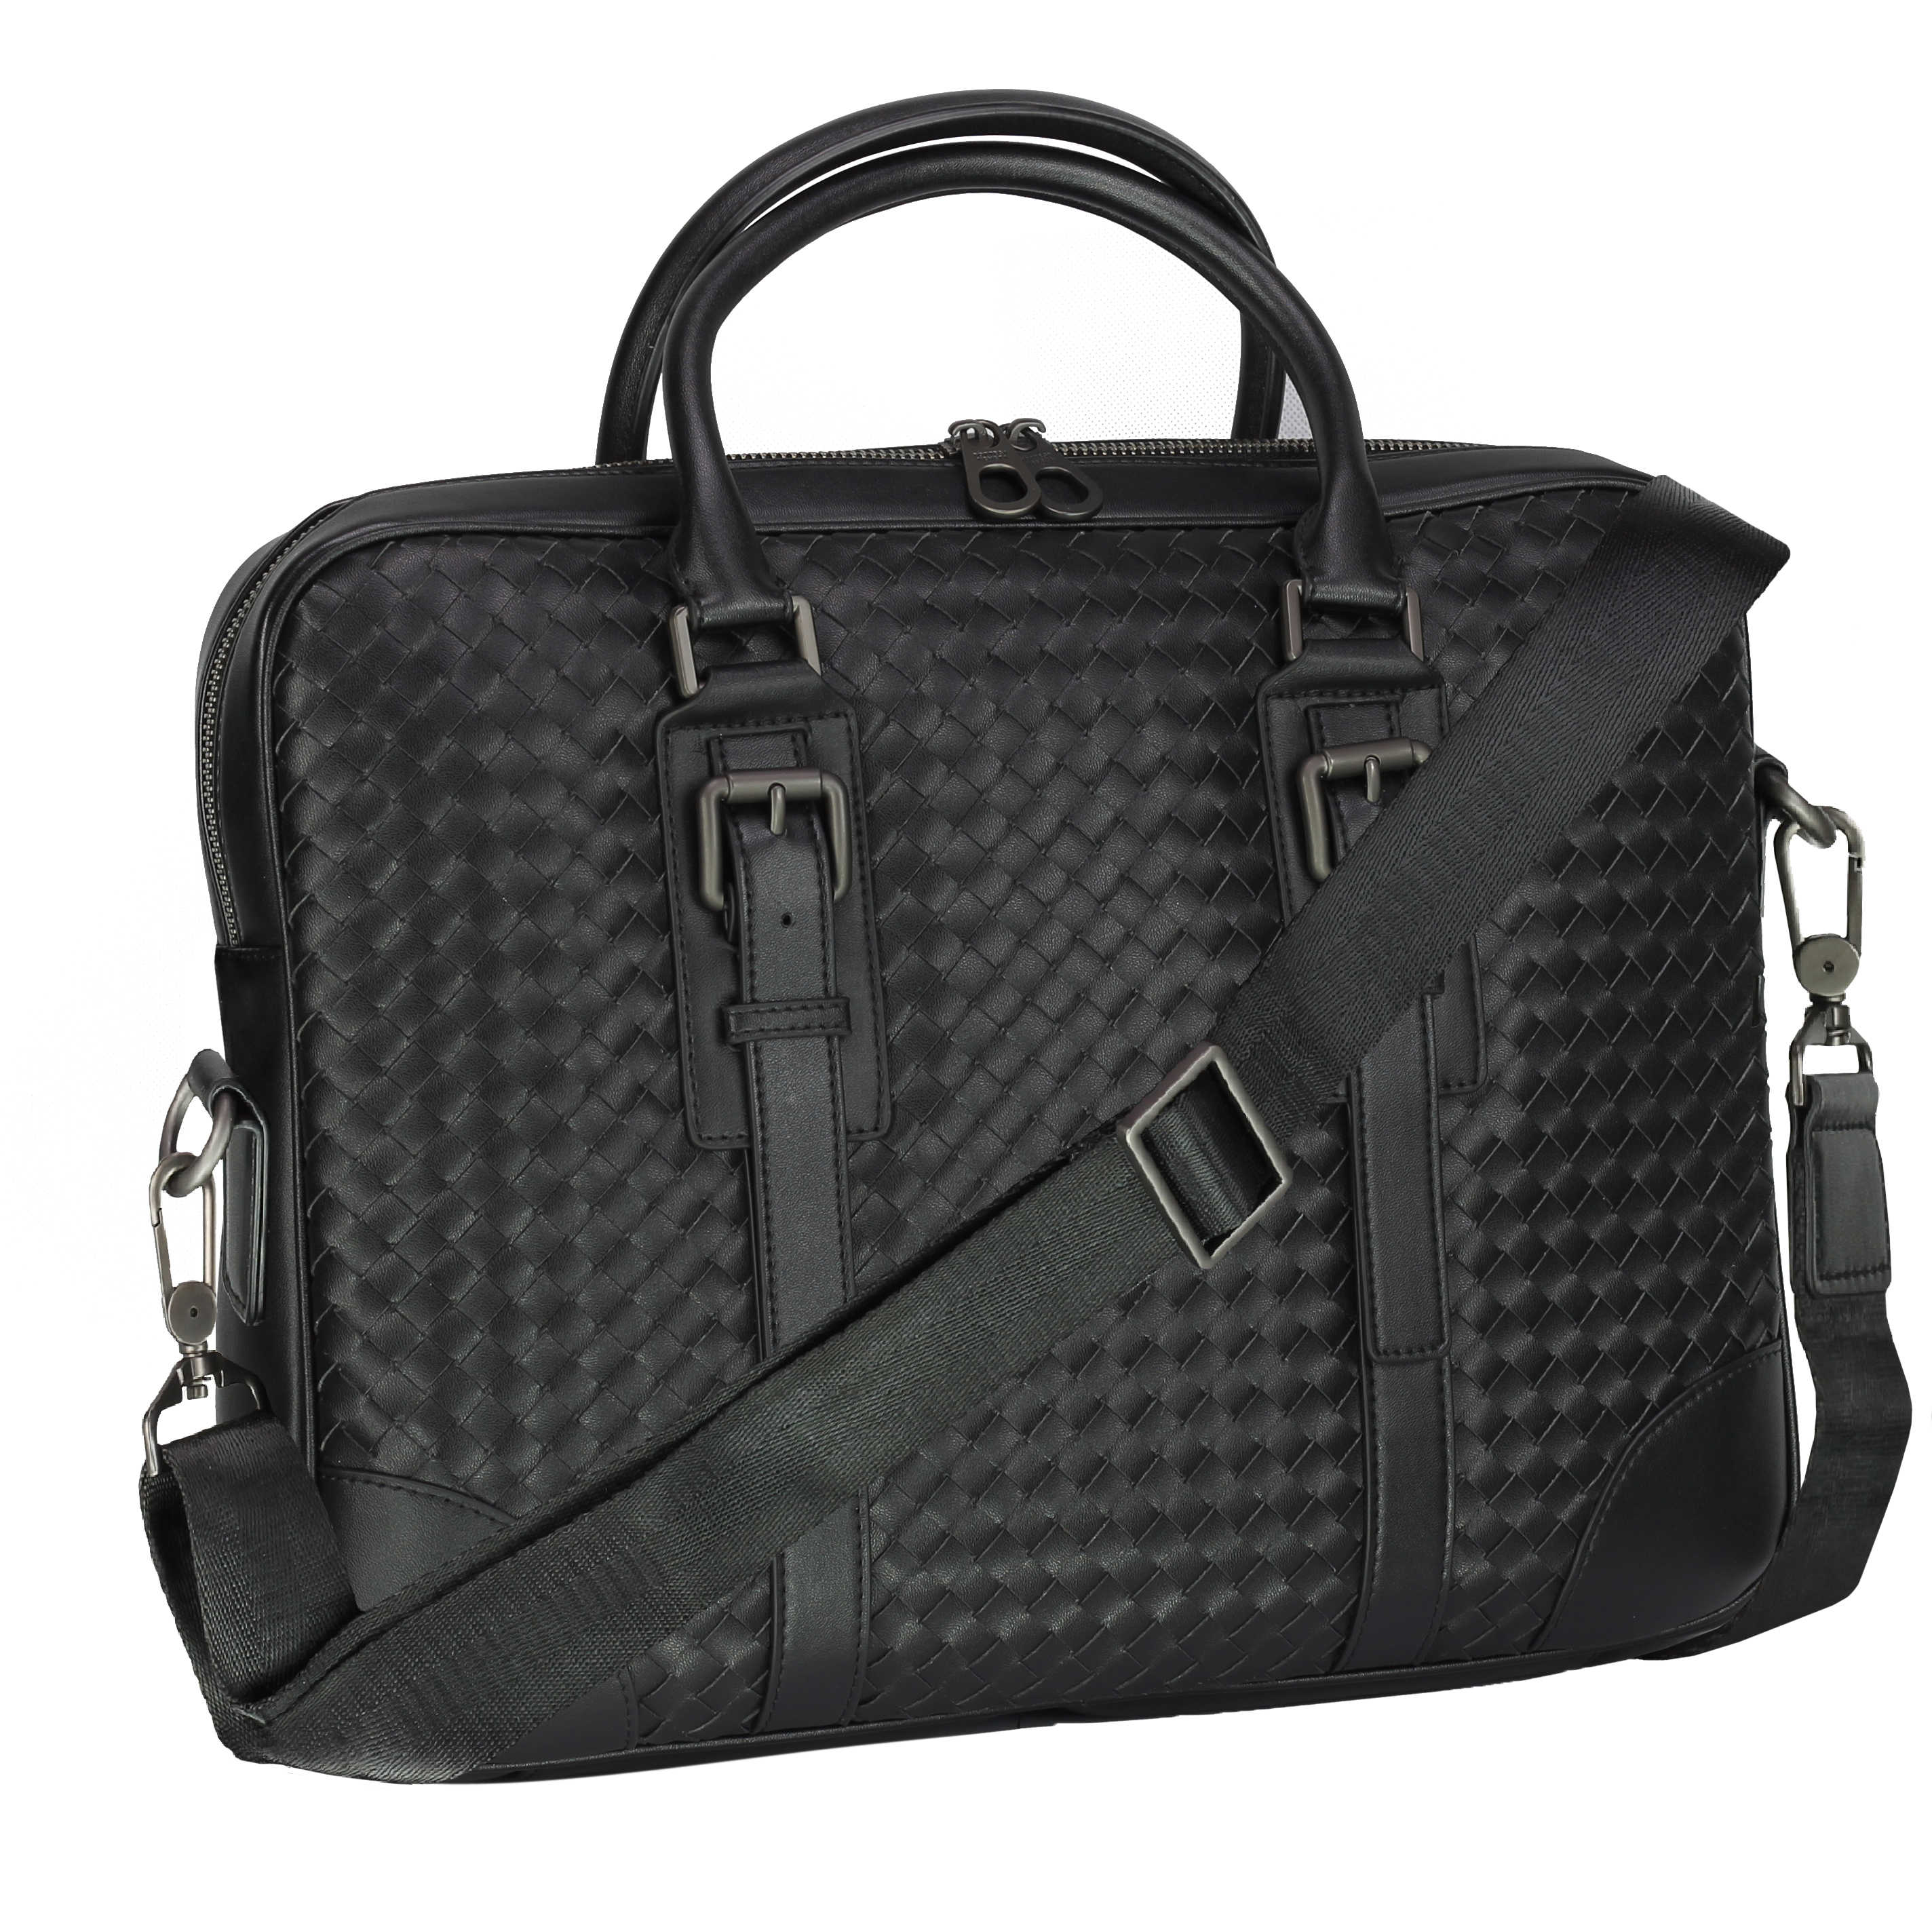 Mens Black Faux Woven Leather Bag Laptop Strap Shoulder Travel Messenger Handbag | eBay